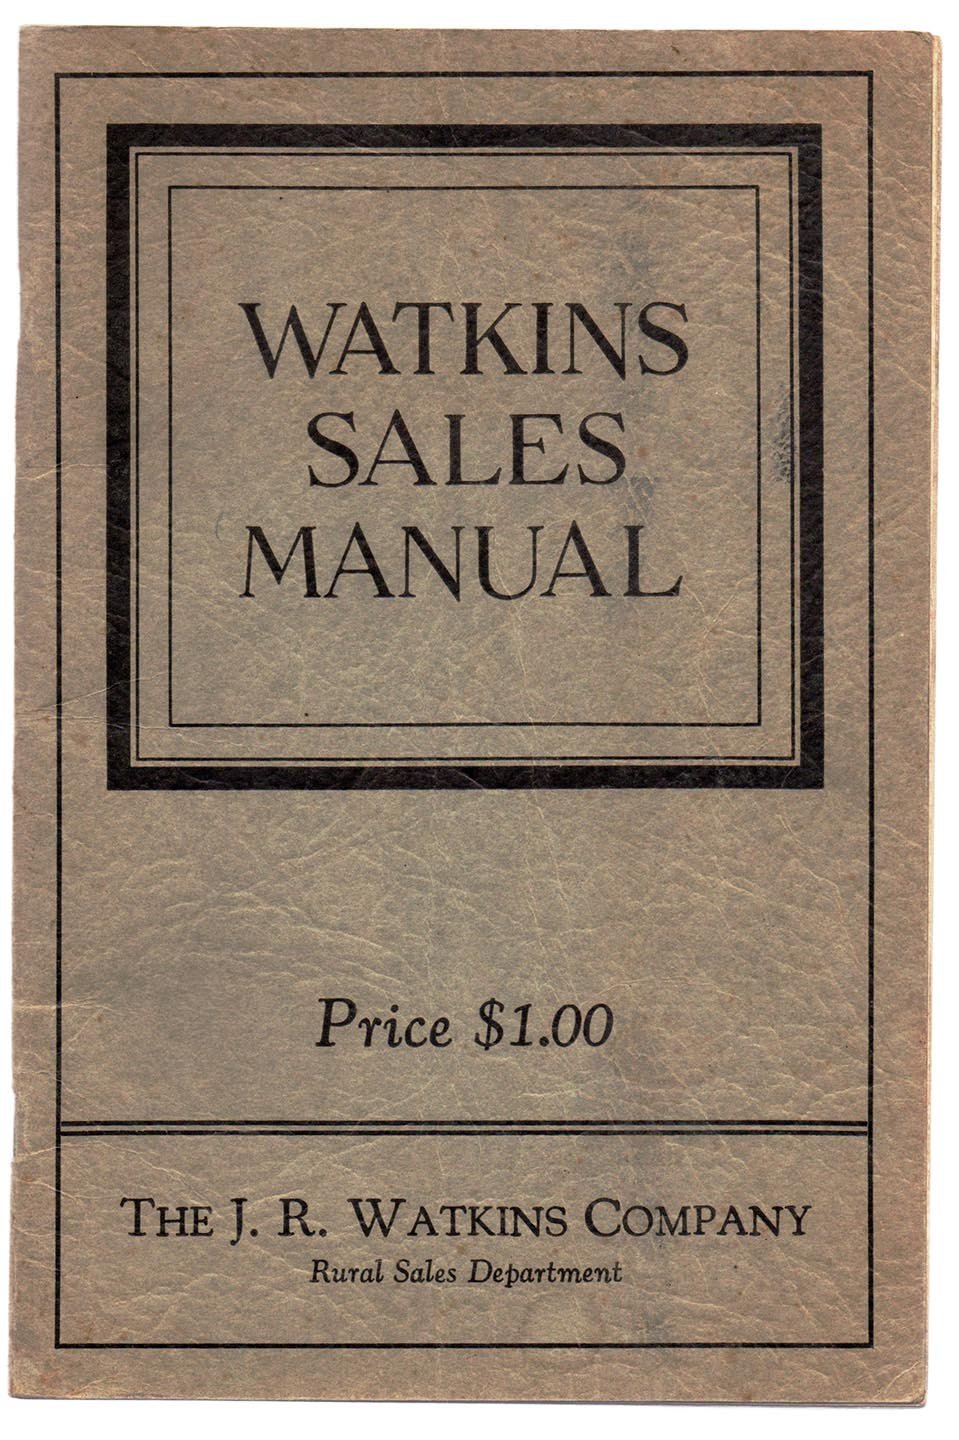 Watkins Sales Manual